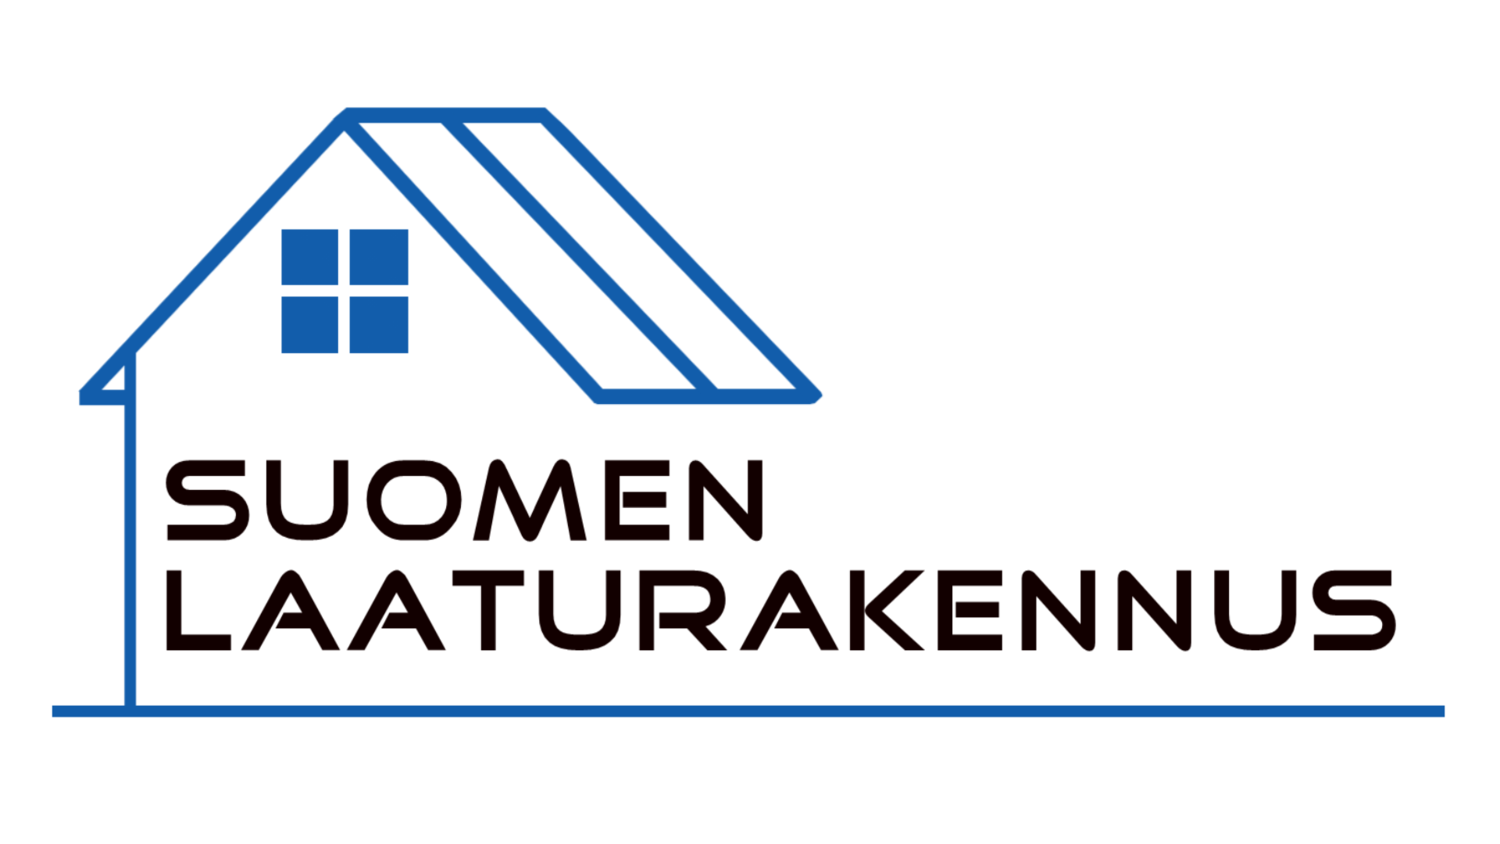 Suomen Laaturakennus